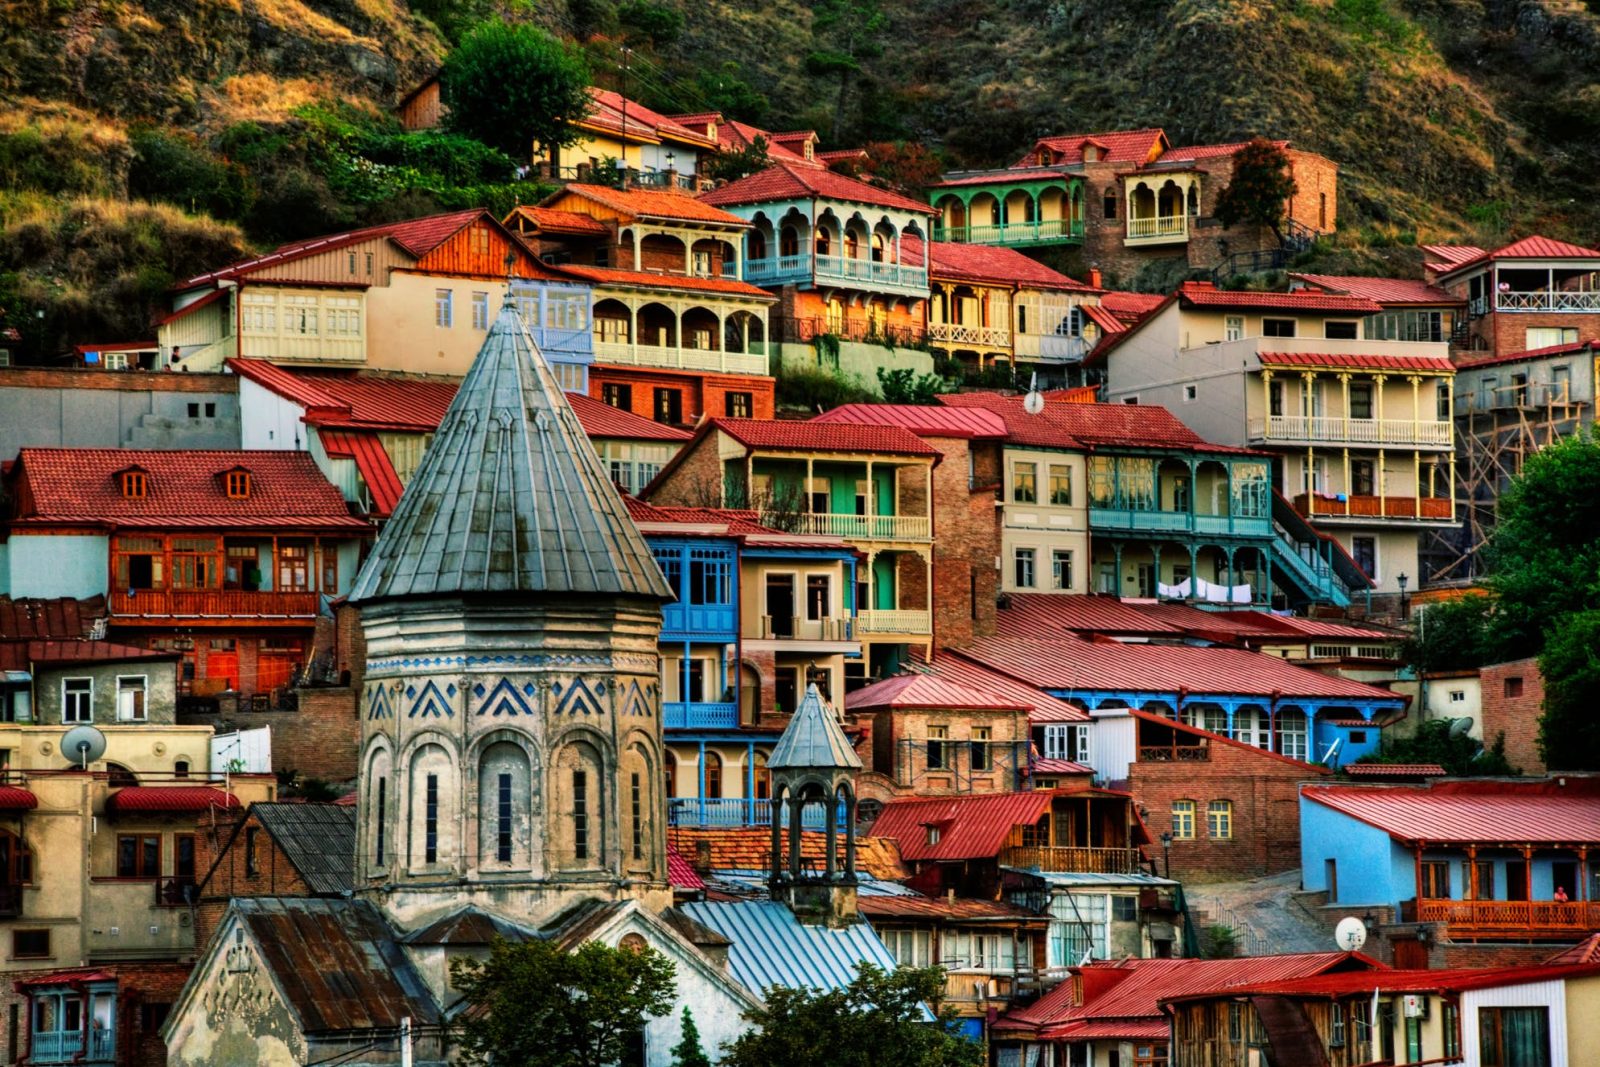 Day 2: Mtskheta and Tbilisi city tour 